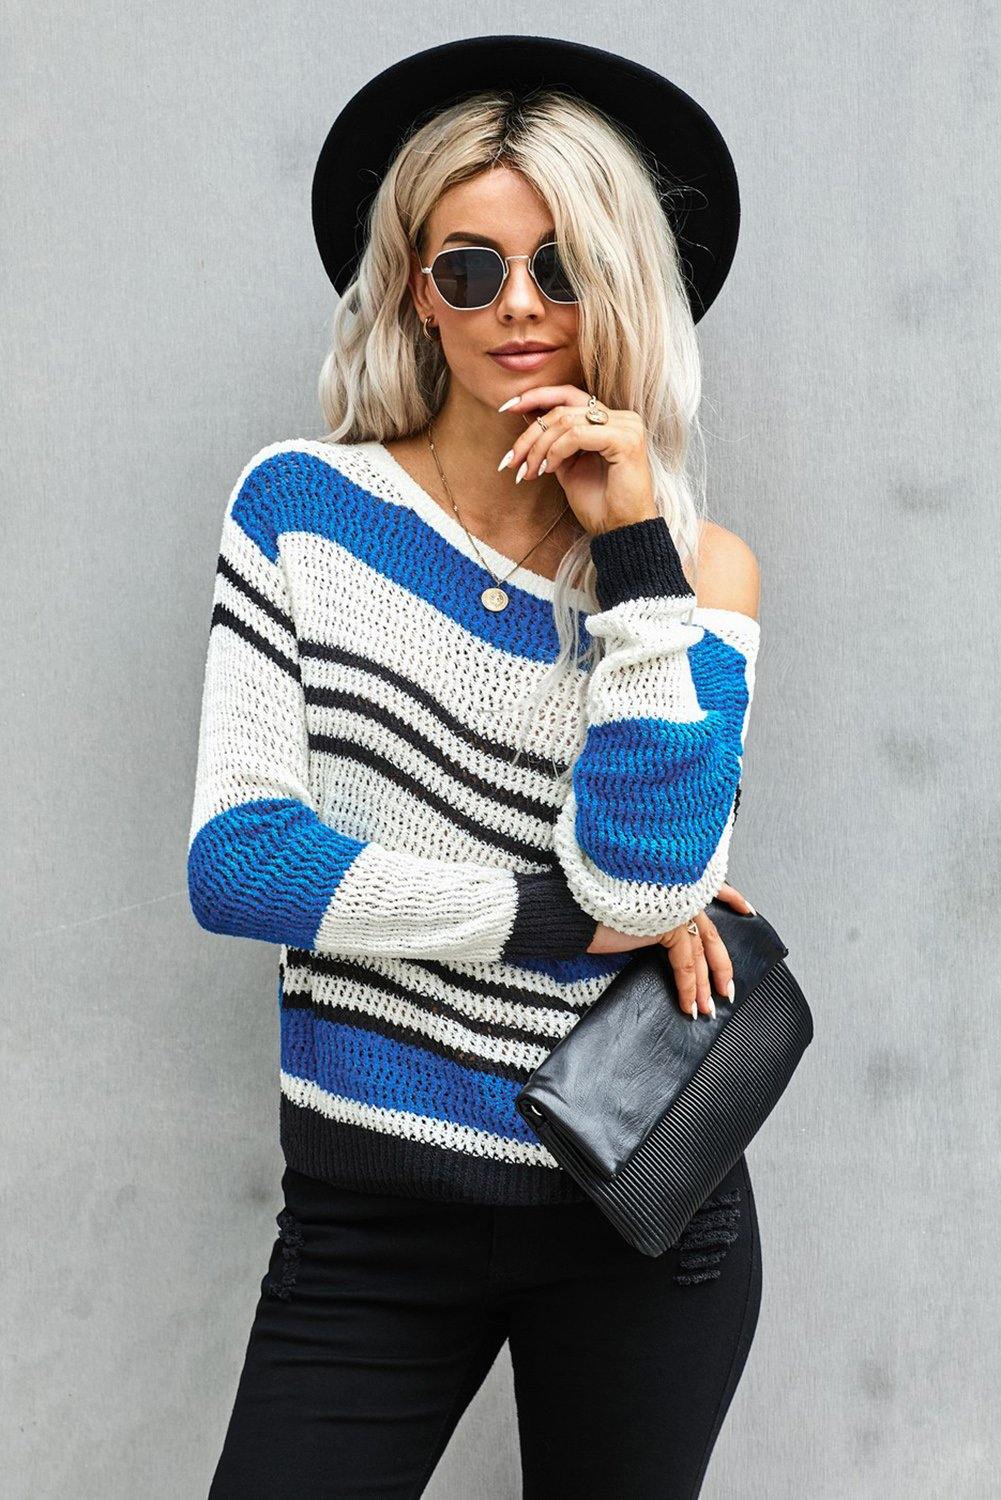 Loose Fit Striped Pattern Sweater - L & M Kee, LLC